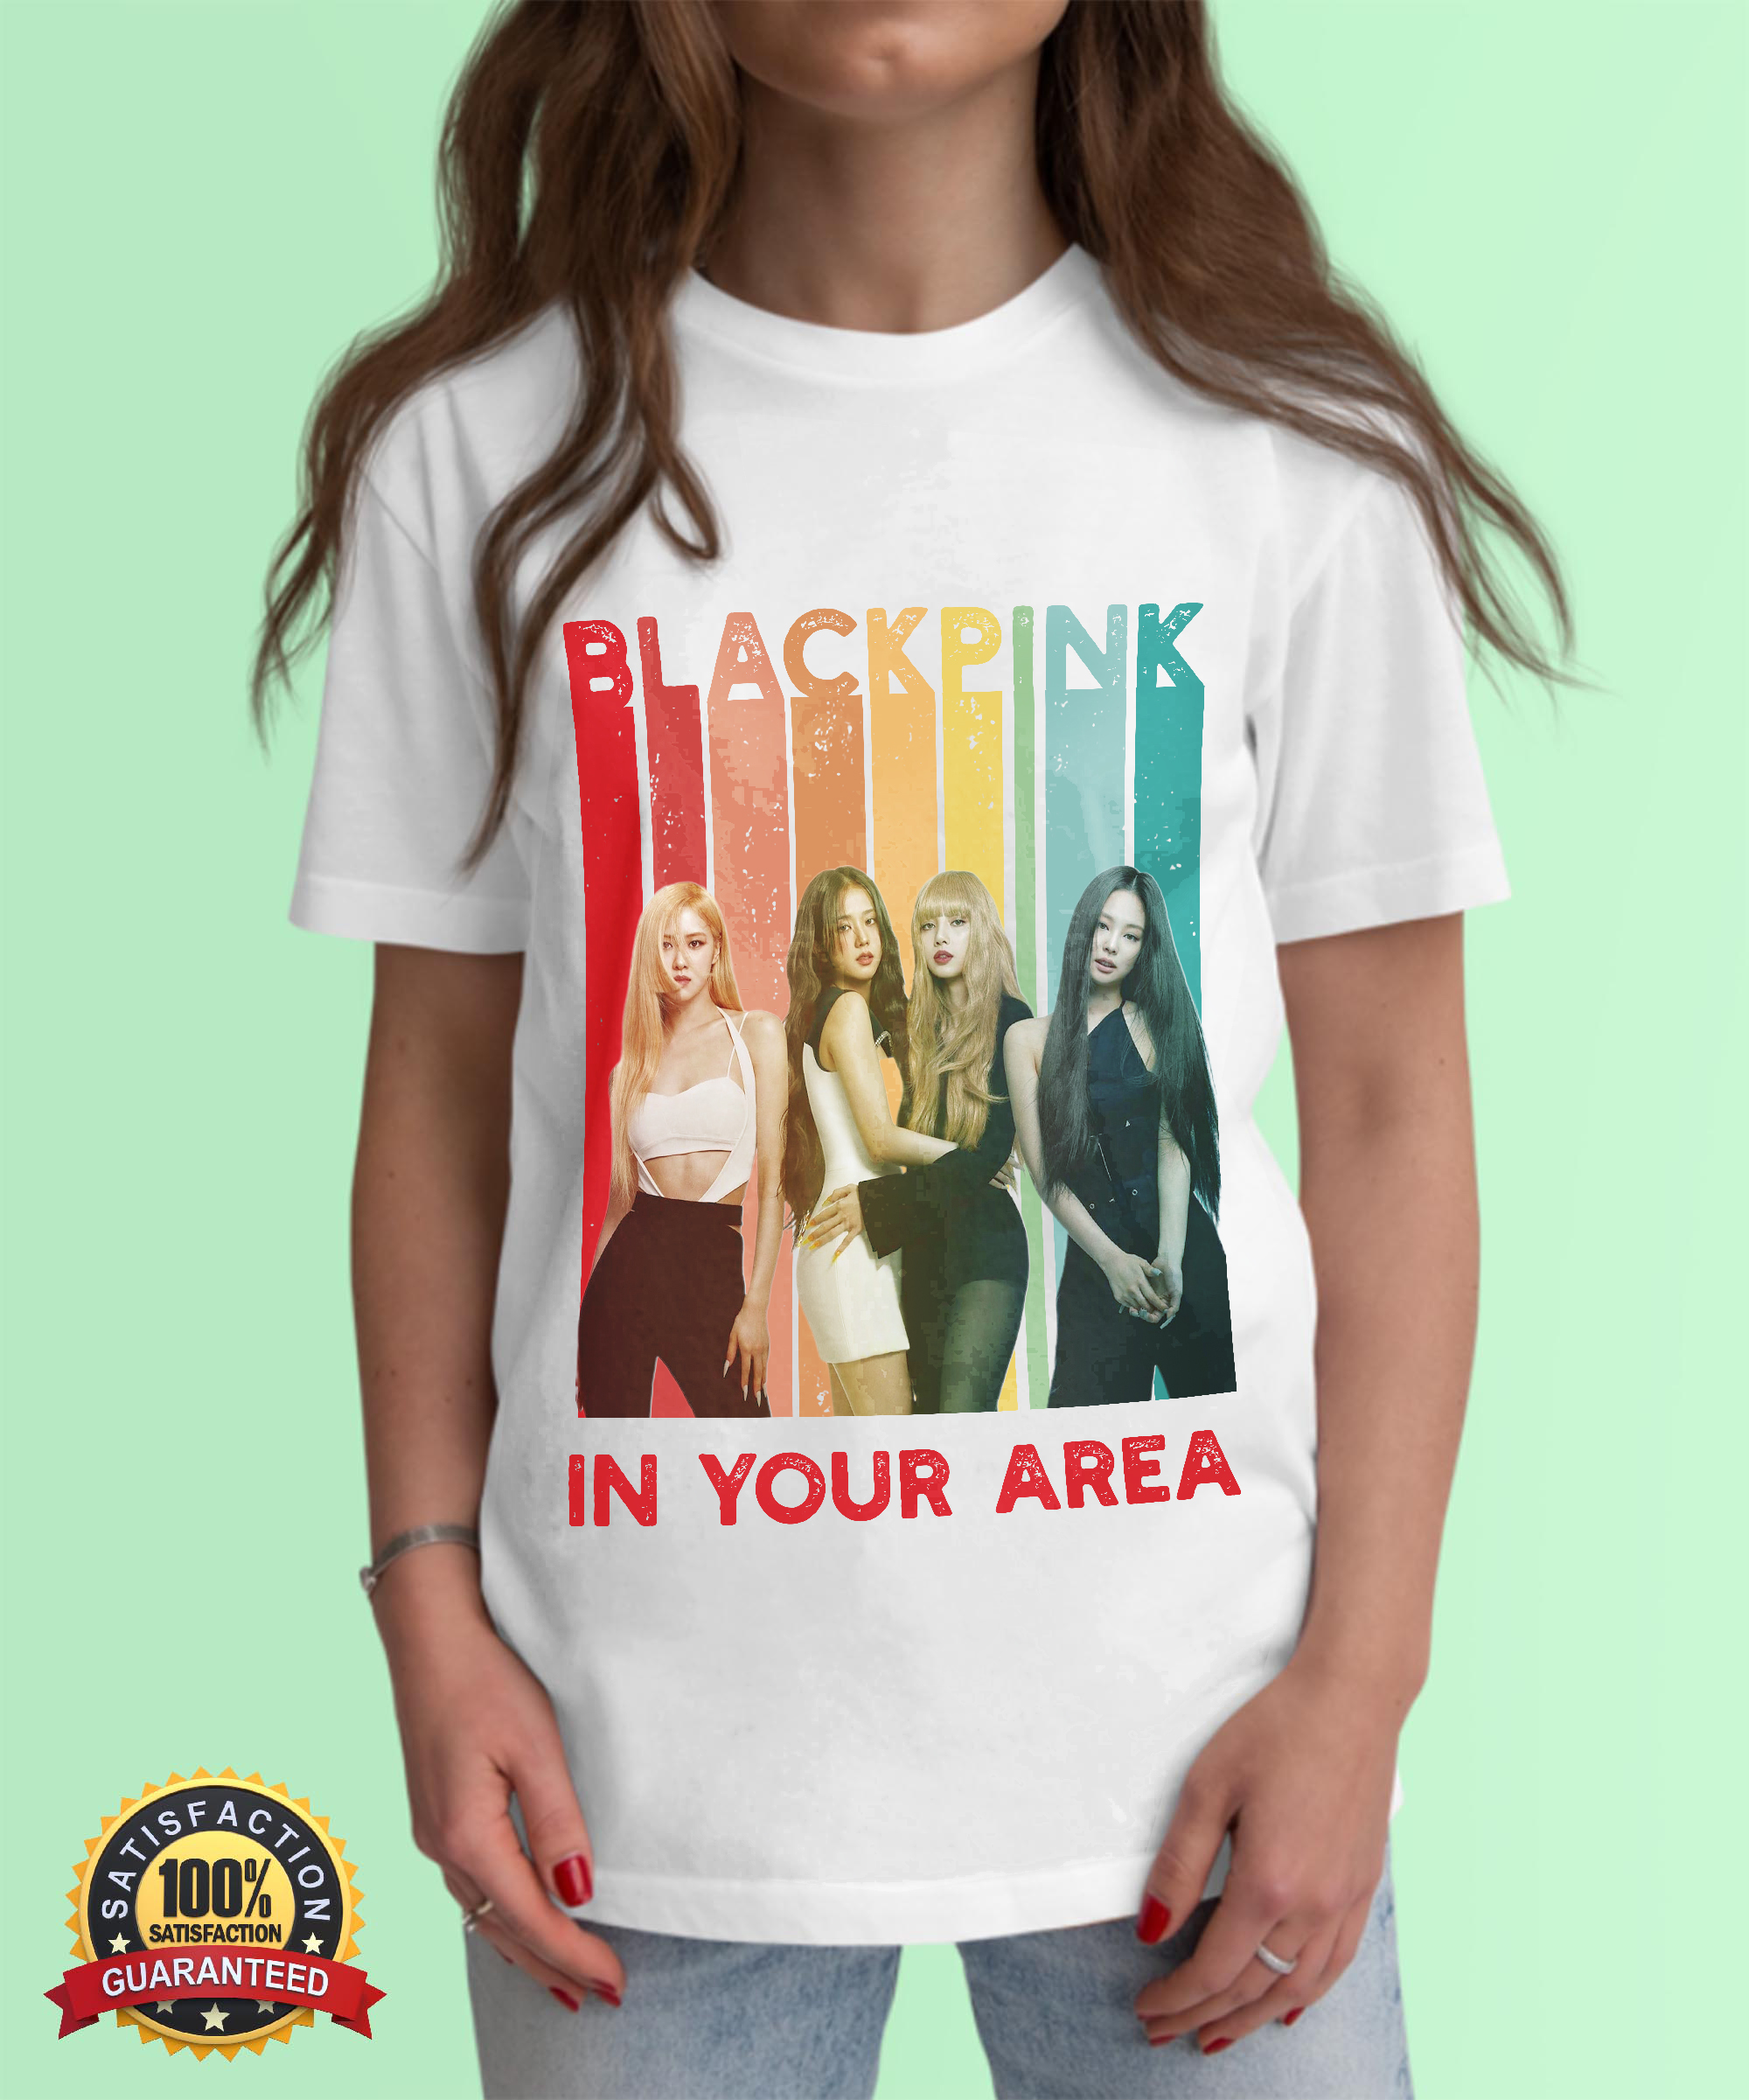 Blackpink Merch T-Shirt, Black Pink Kpop Shirt